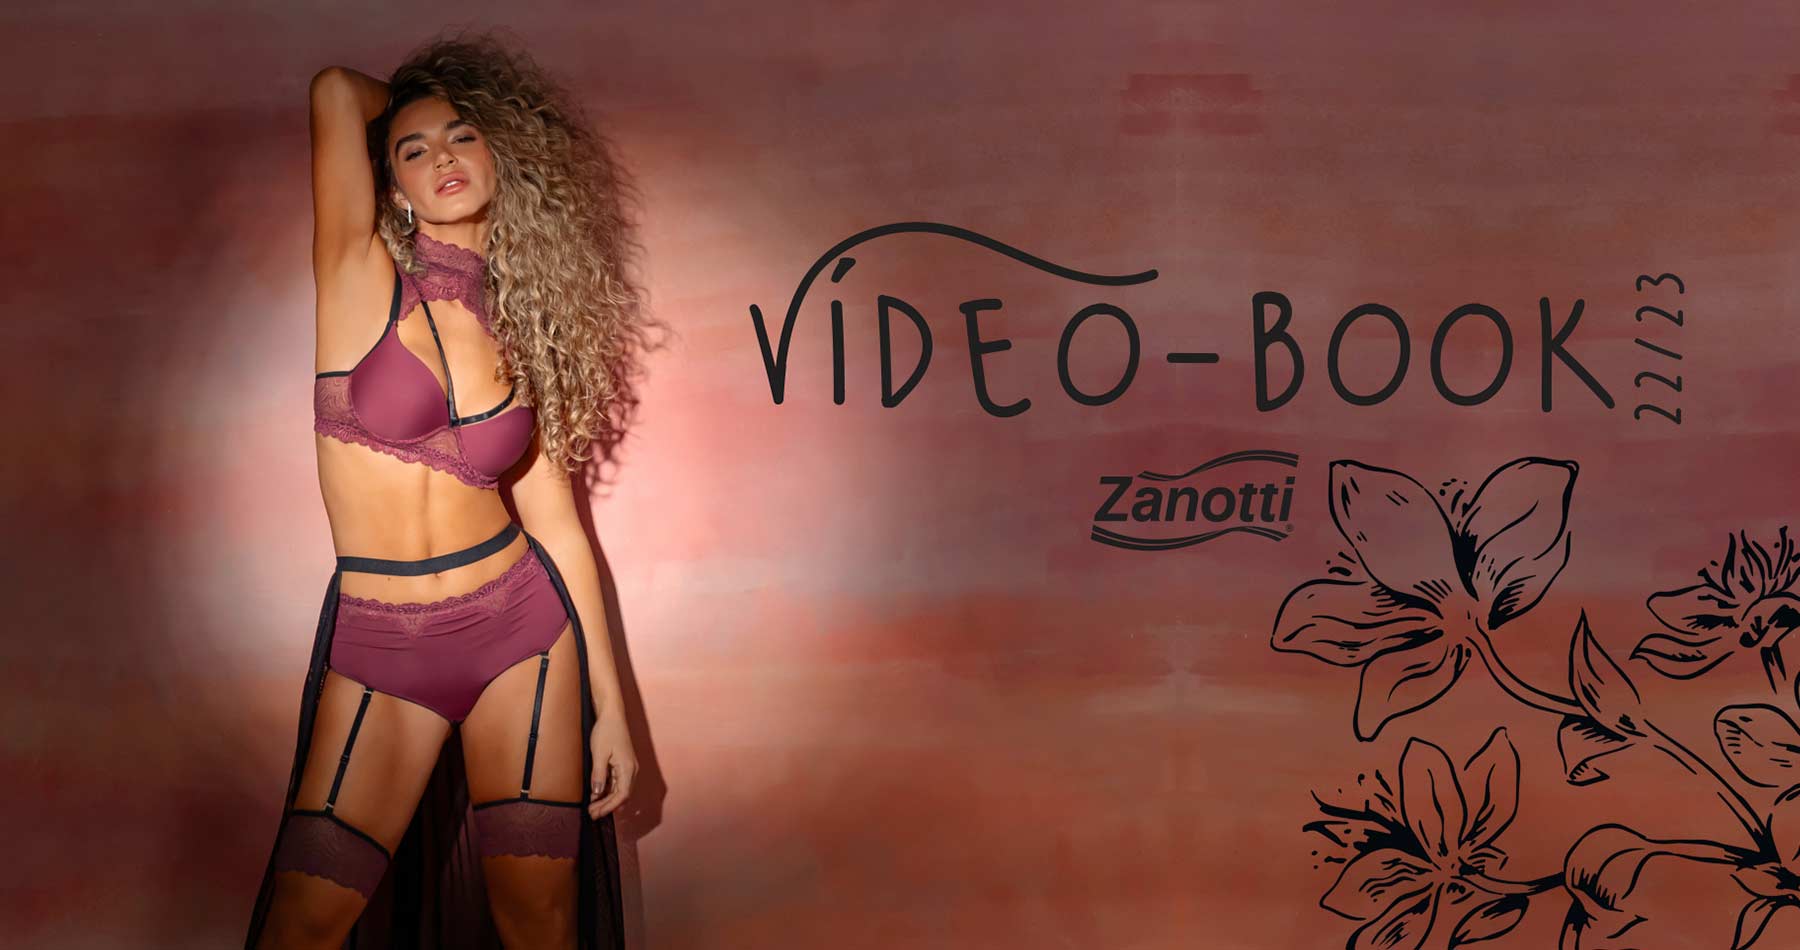 imagem de mulher com lingerie sexy e o texto novo vídeo-book Zanotti